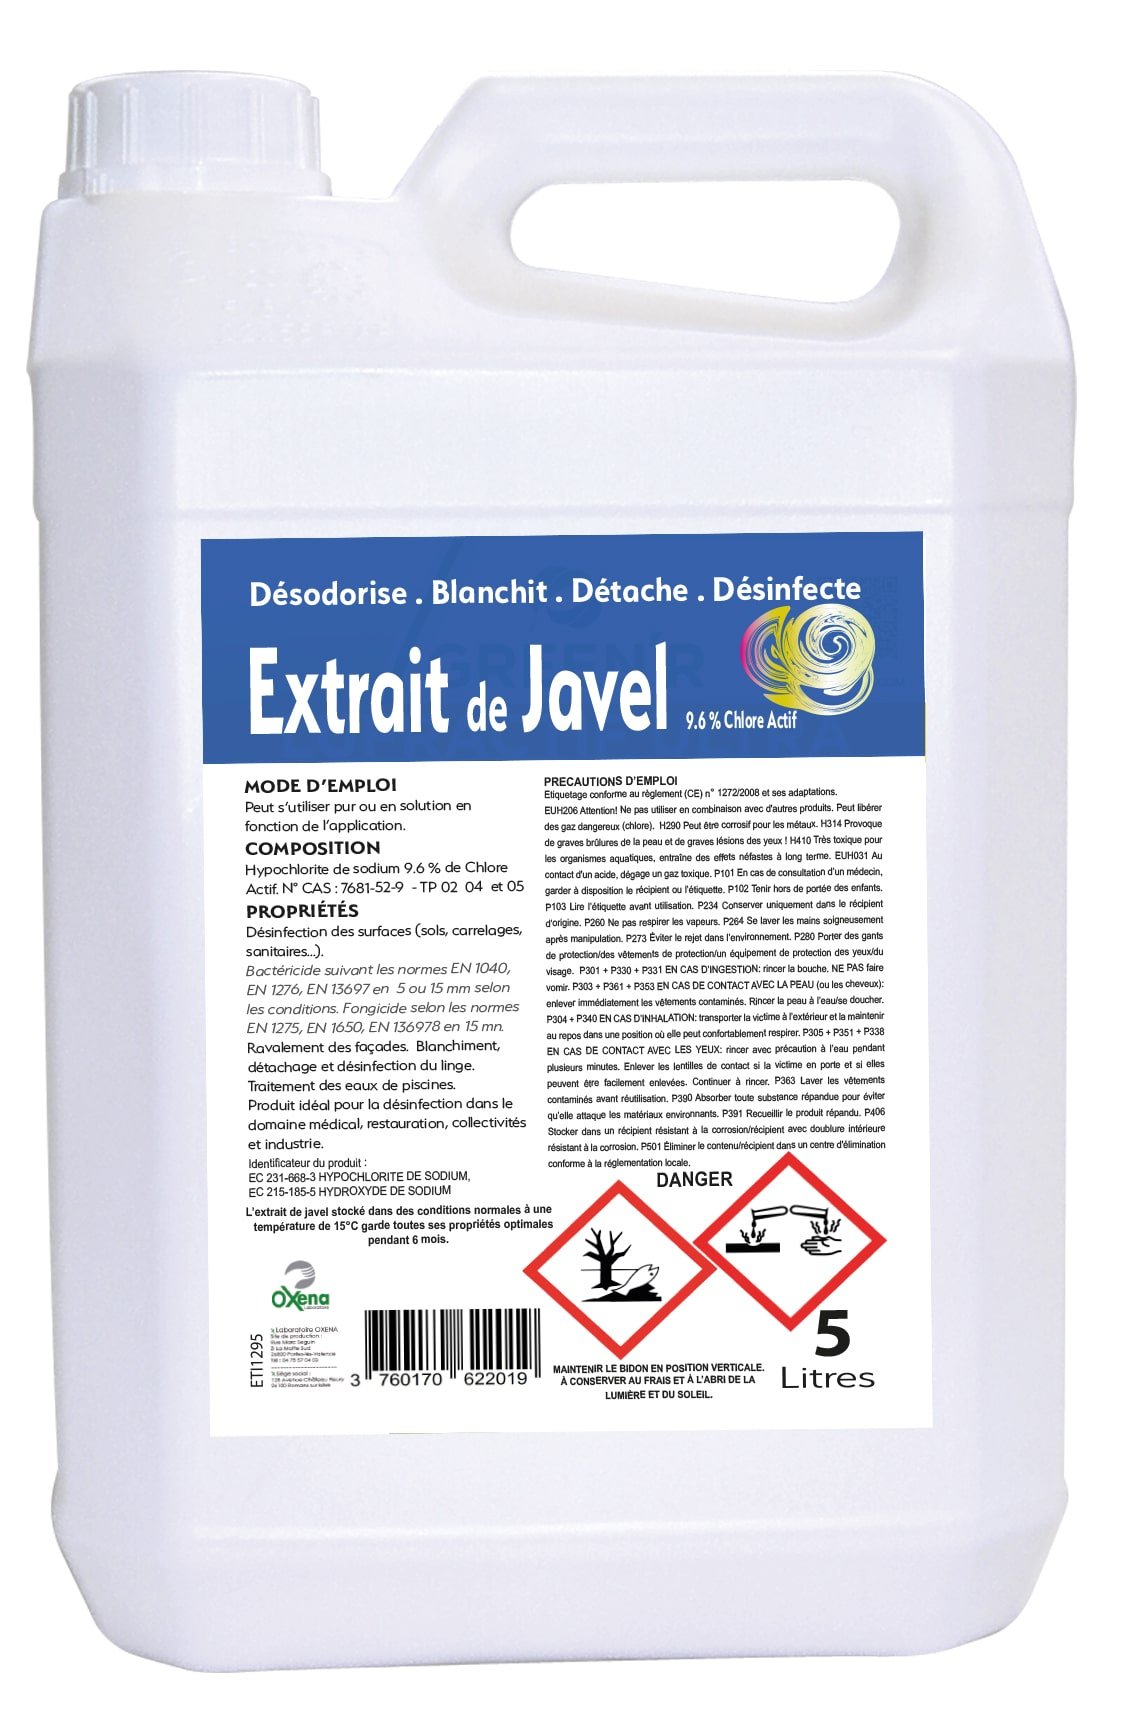 NOVOPURE - Extrait de javel 9,6% de chlore actif 5L - L'extrait de